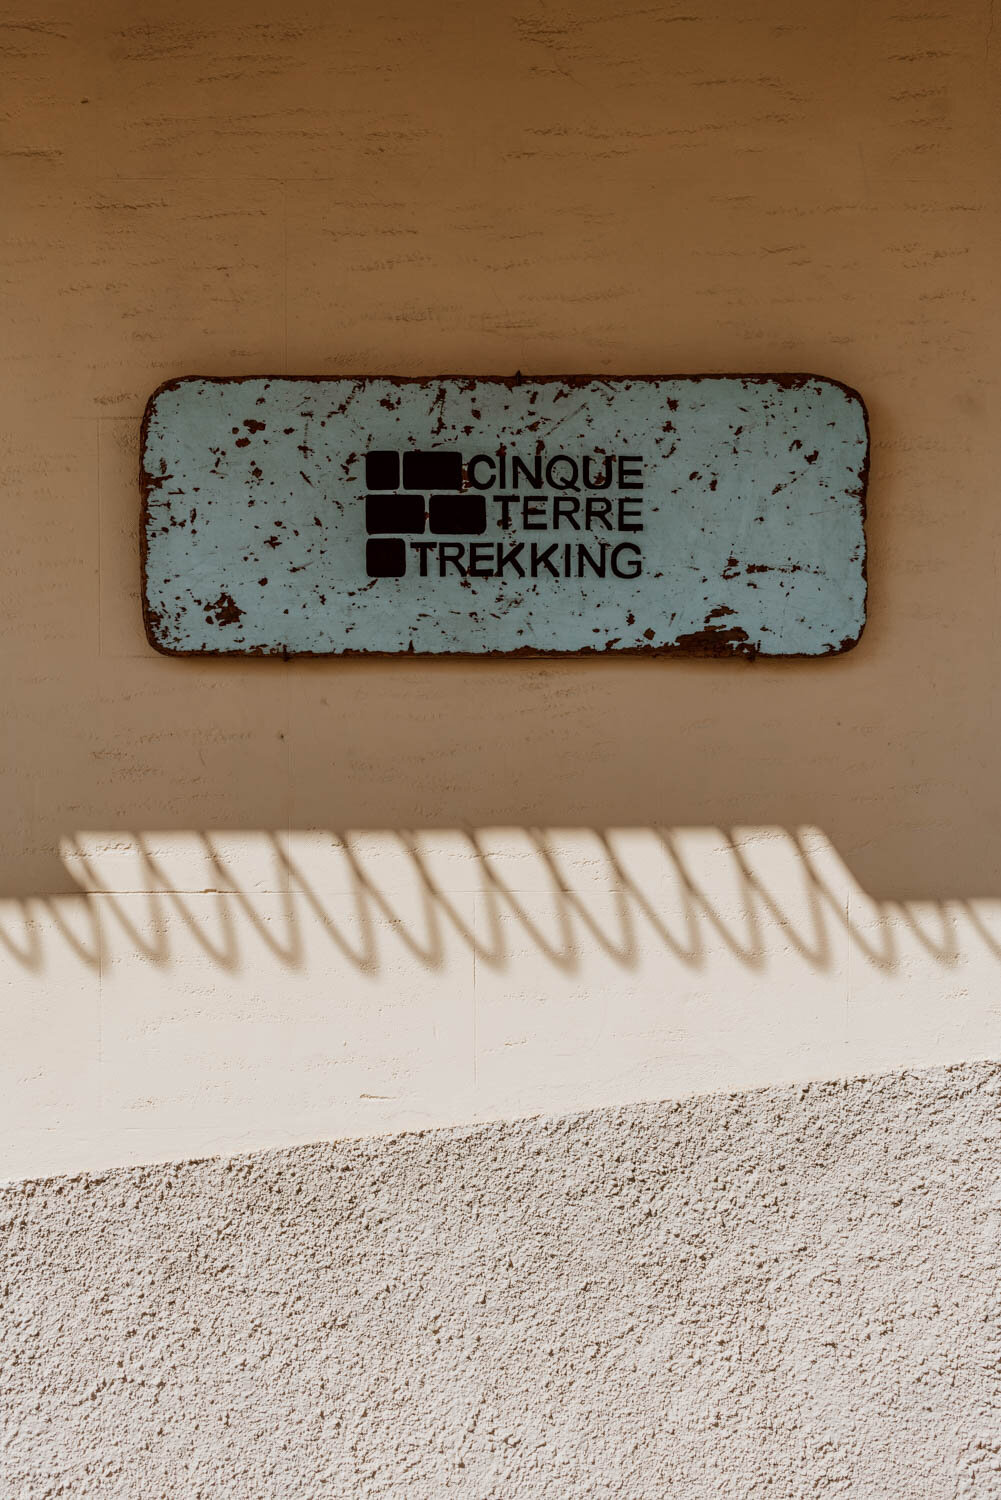 Cinque Terre Trekking sign